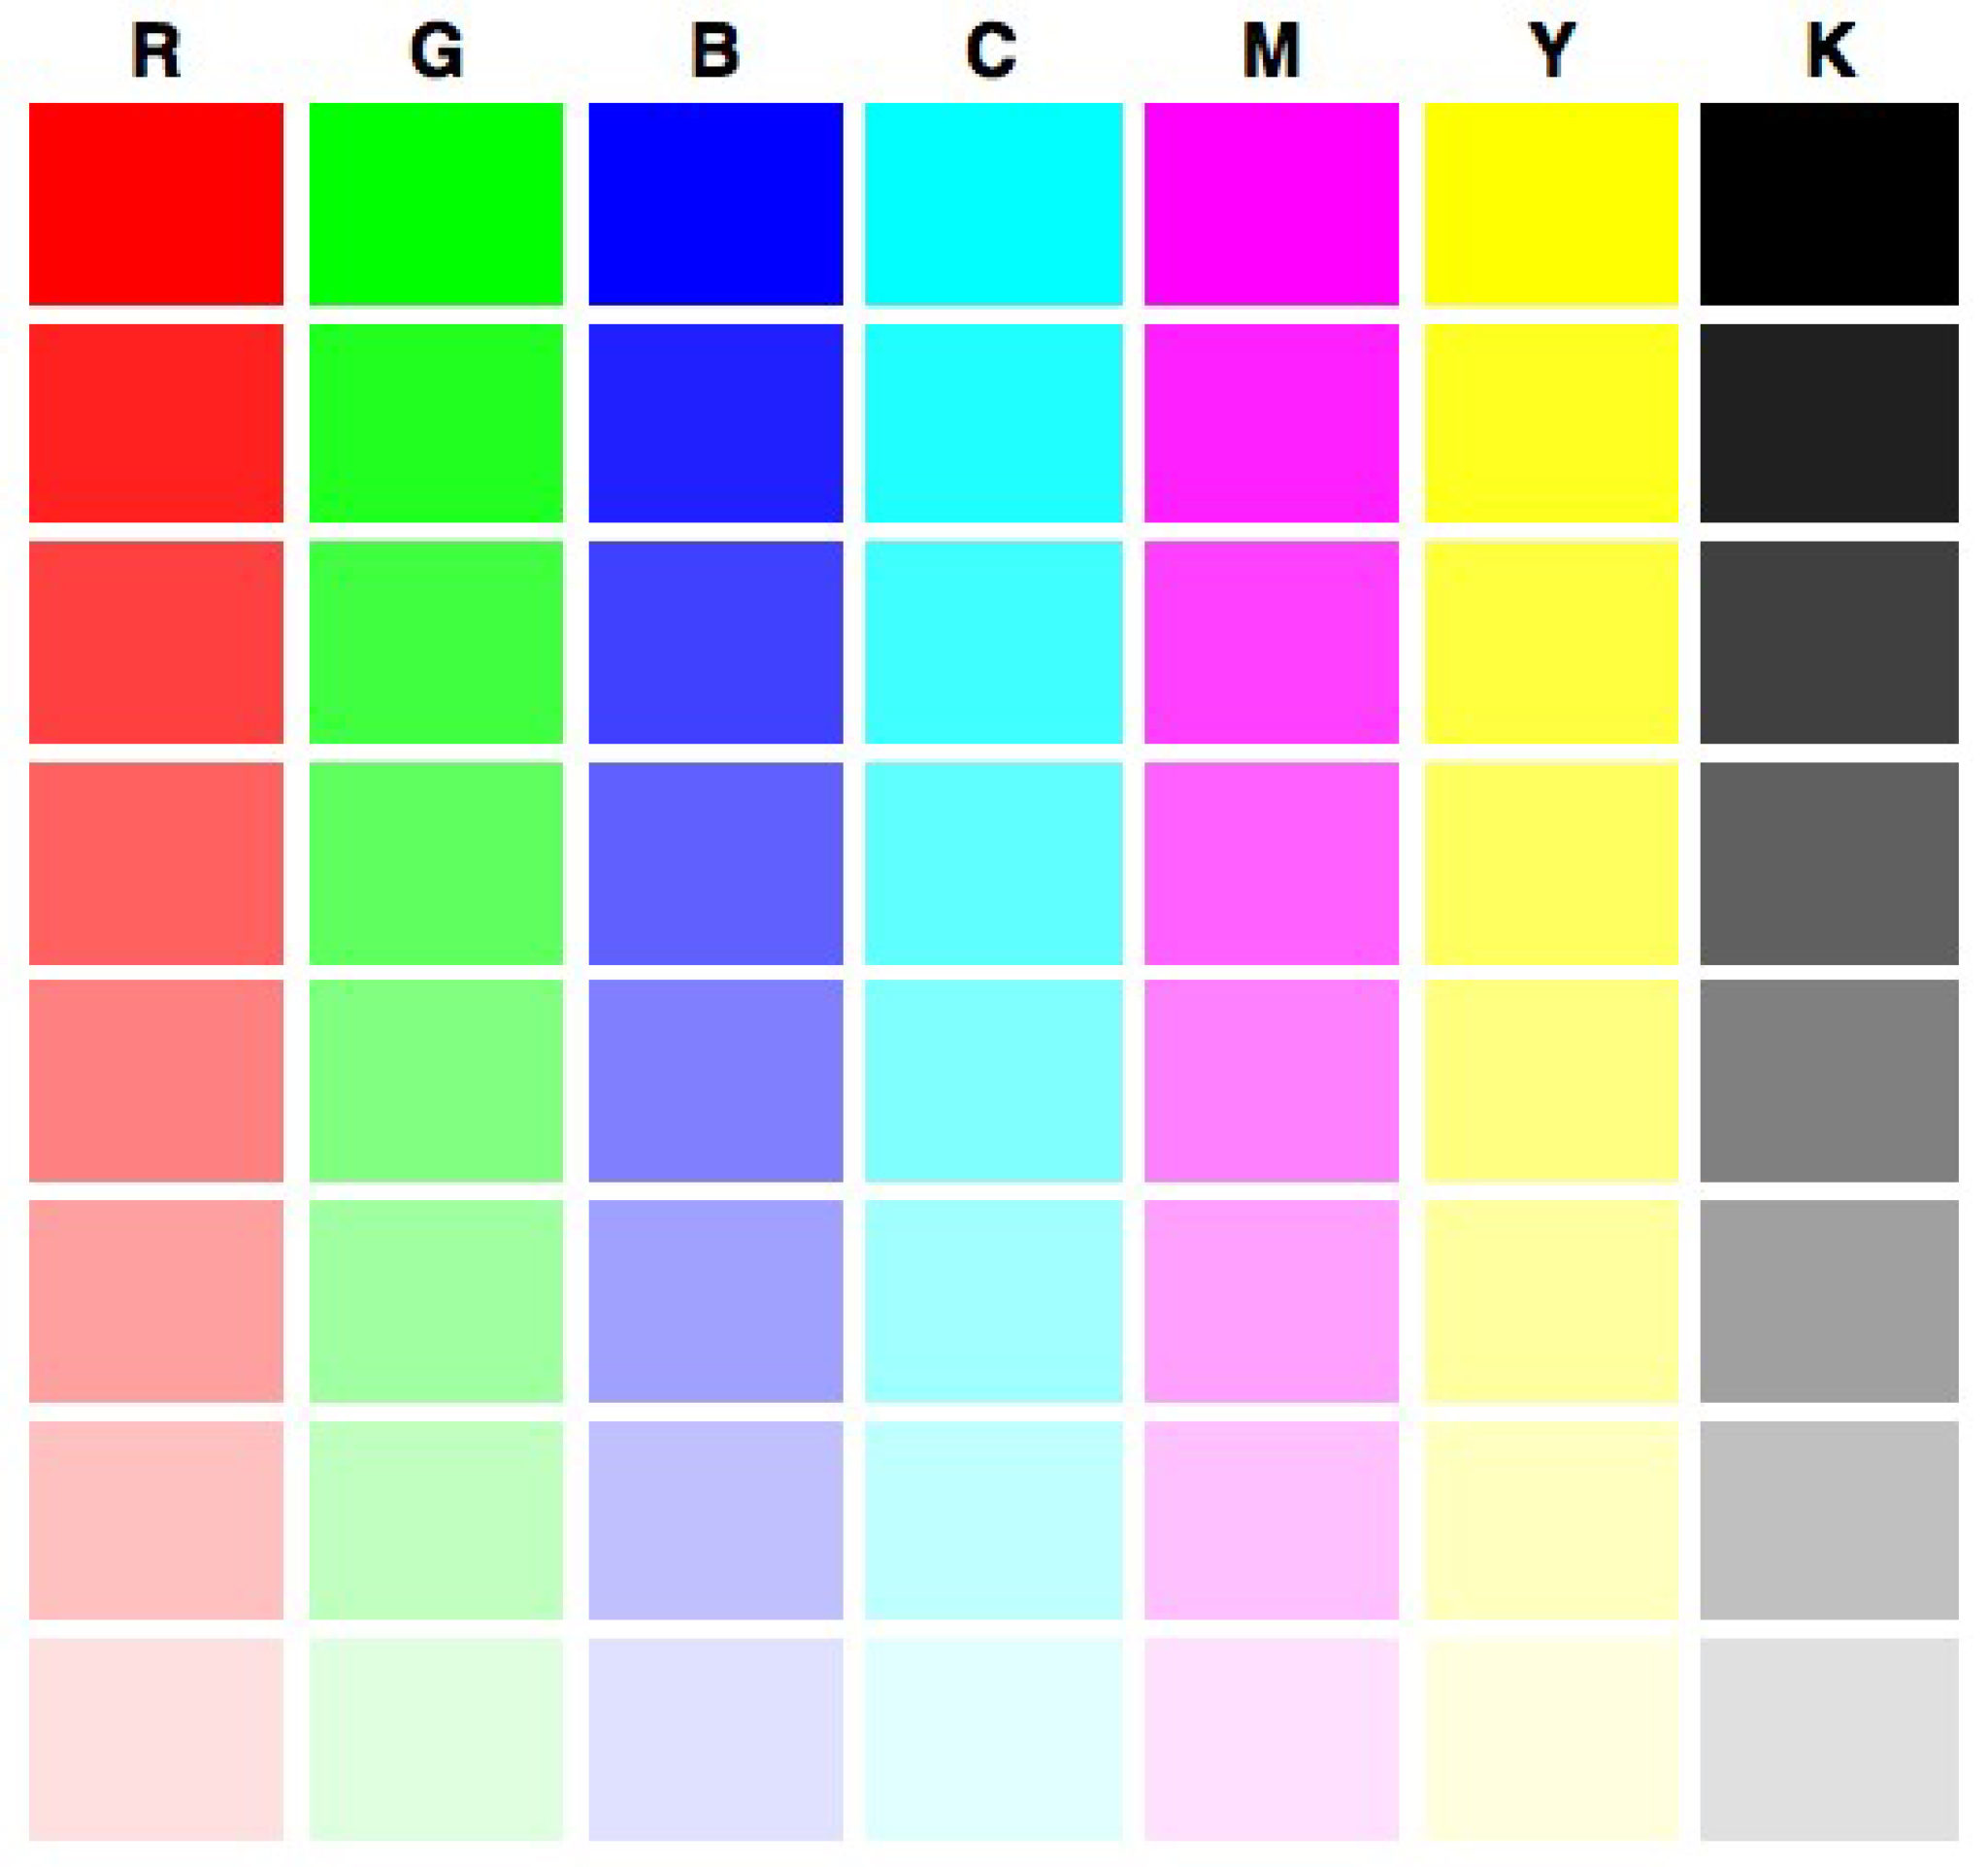 Печать цветных страниц. Тестовая страница для принтера Epson l800. Тест принтера Эпсон 6 цветов. Тест принтера Эпсон 4 цвета. Проверочная таблица цветов для принтера Эпсон.